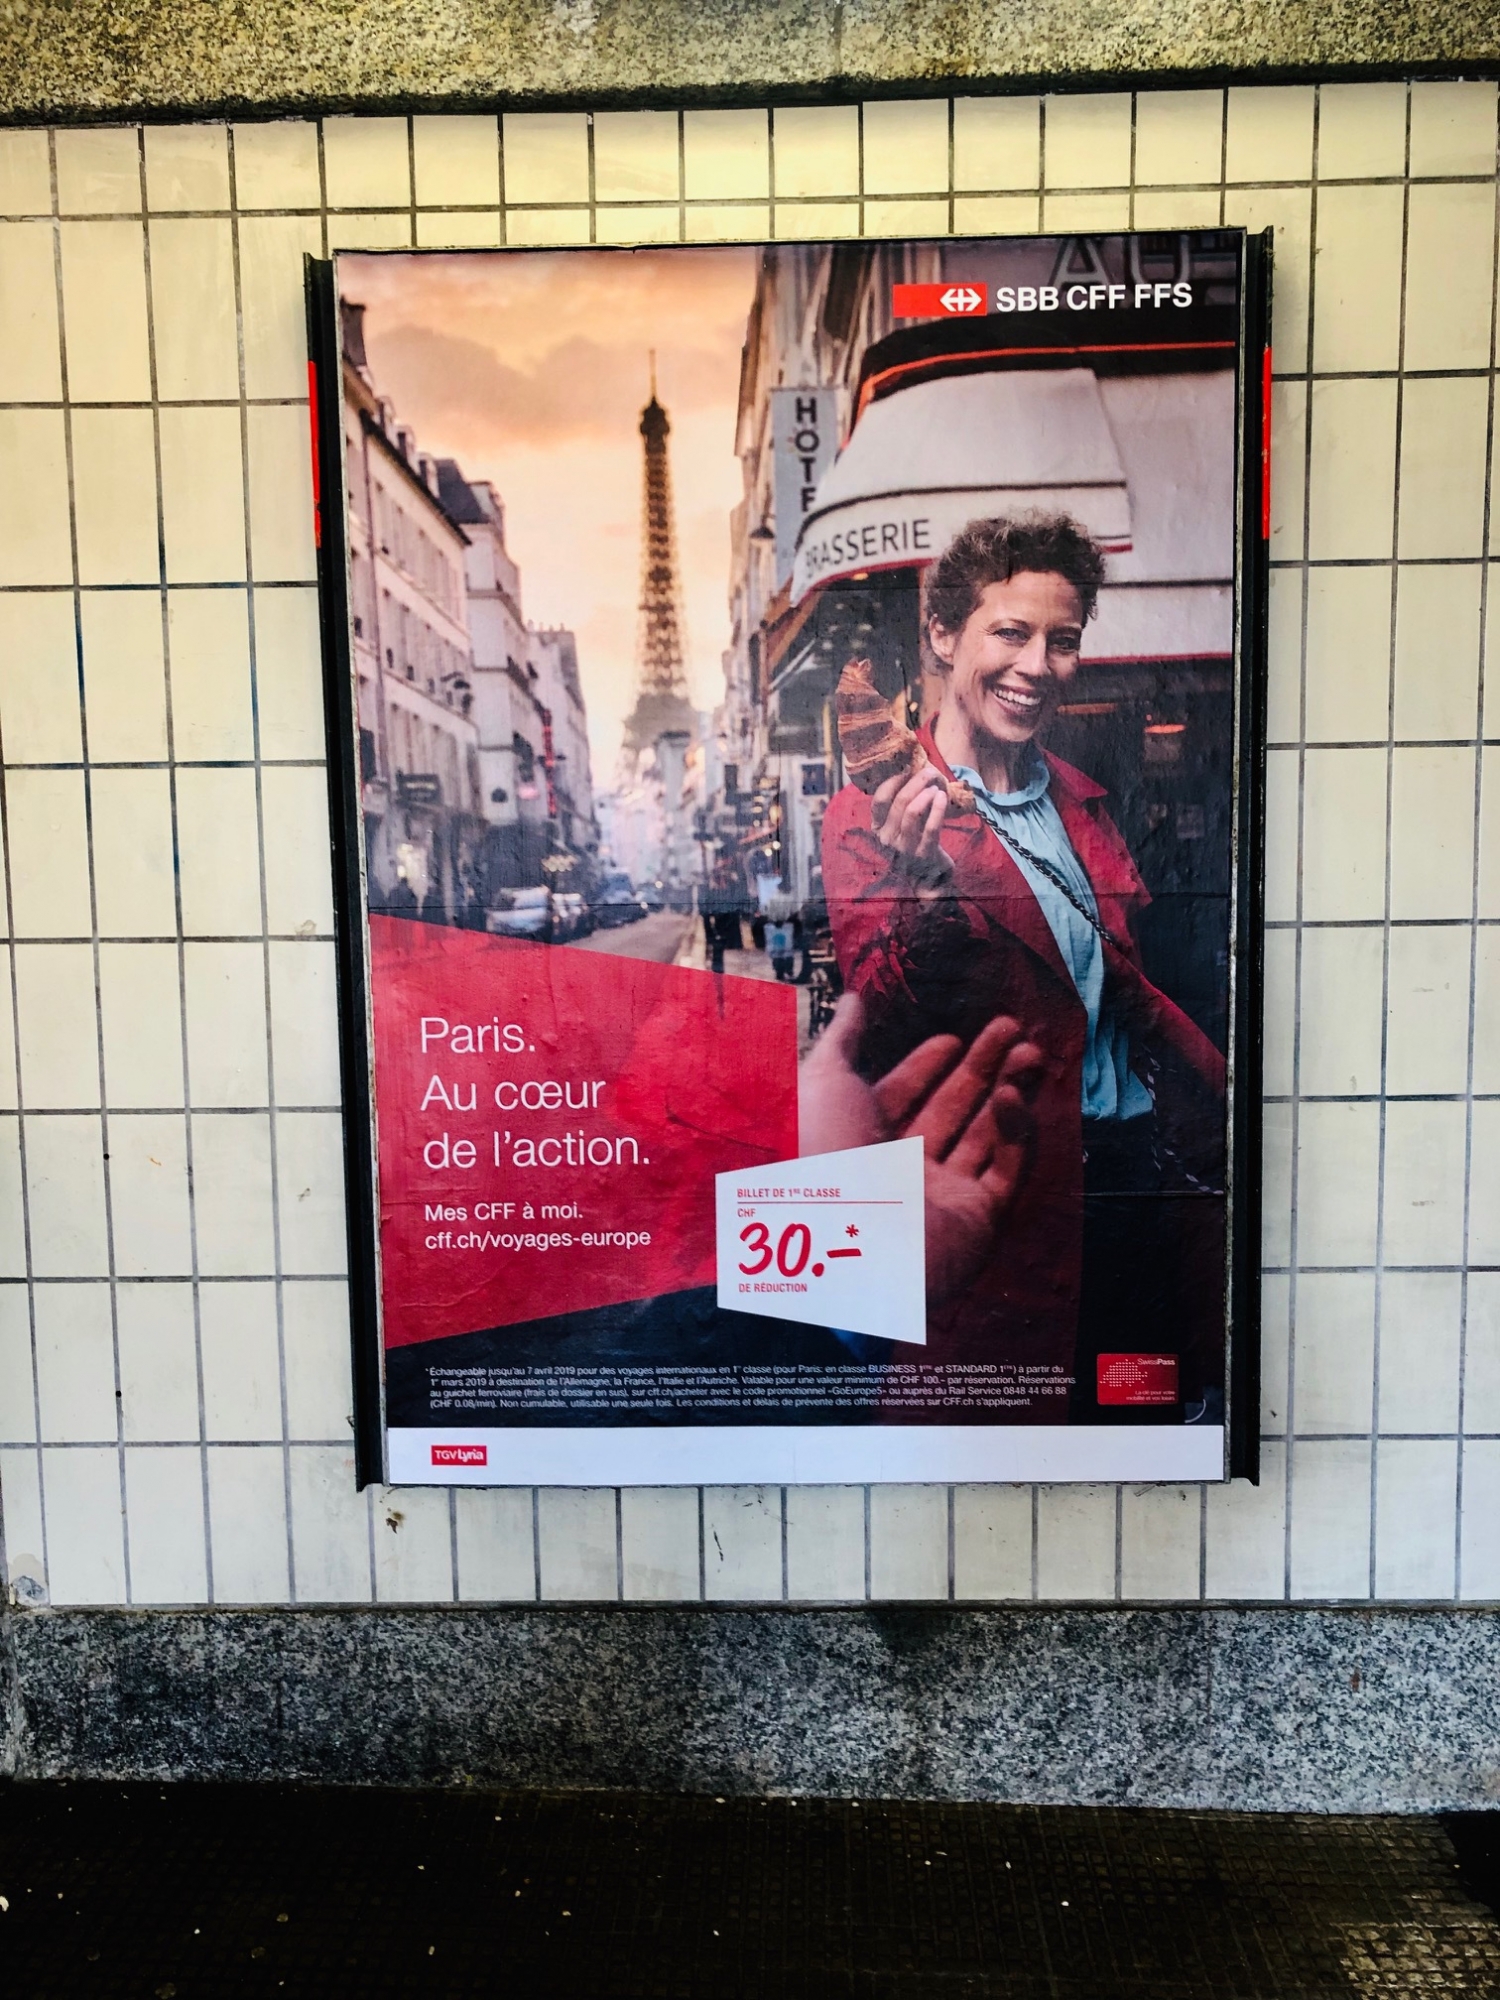 L'affiche en question, ici immortalisée à Versoix, est présente dans de nombreuse gares de Suisse.